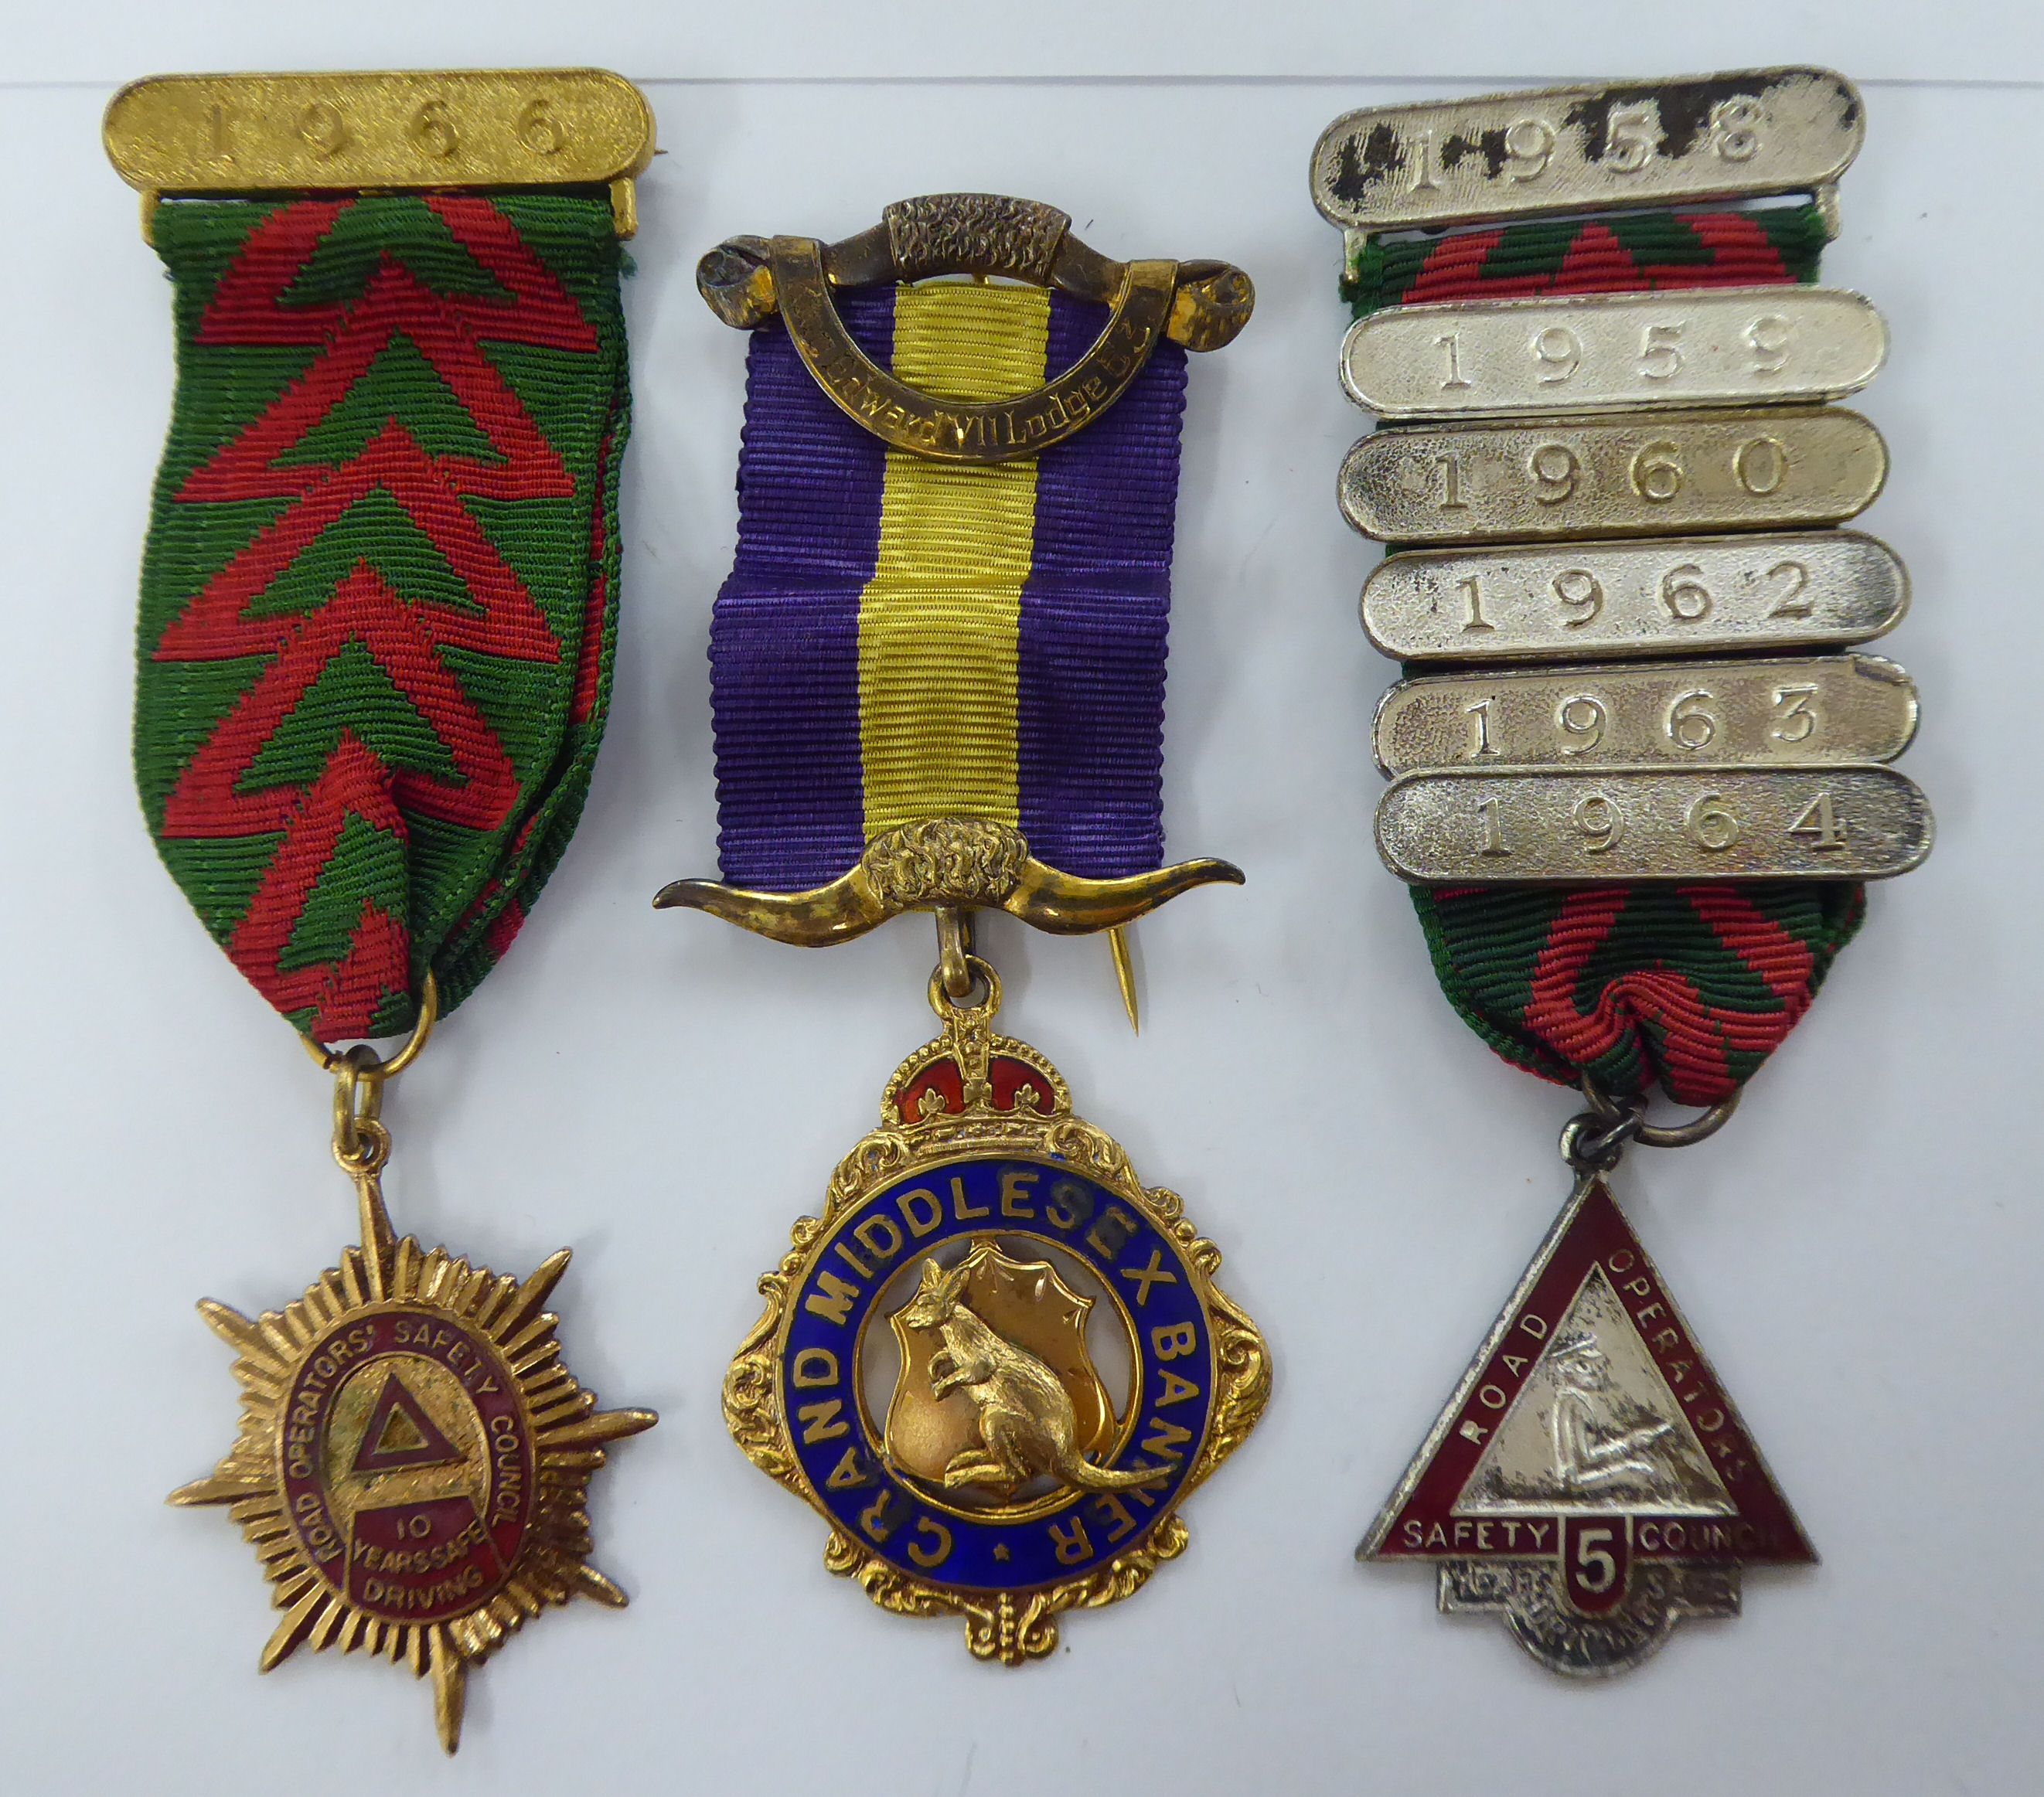 Three medals on ribbons, viz.